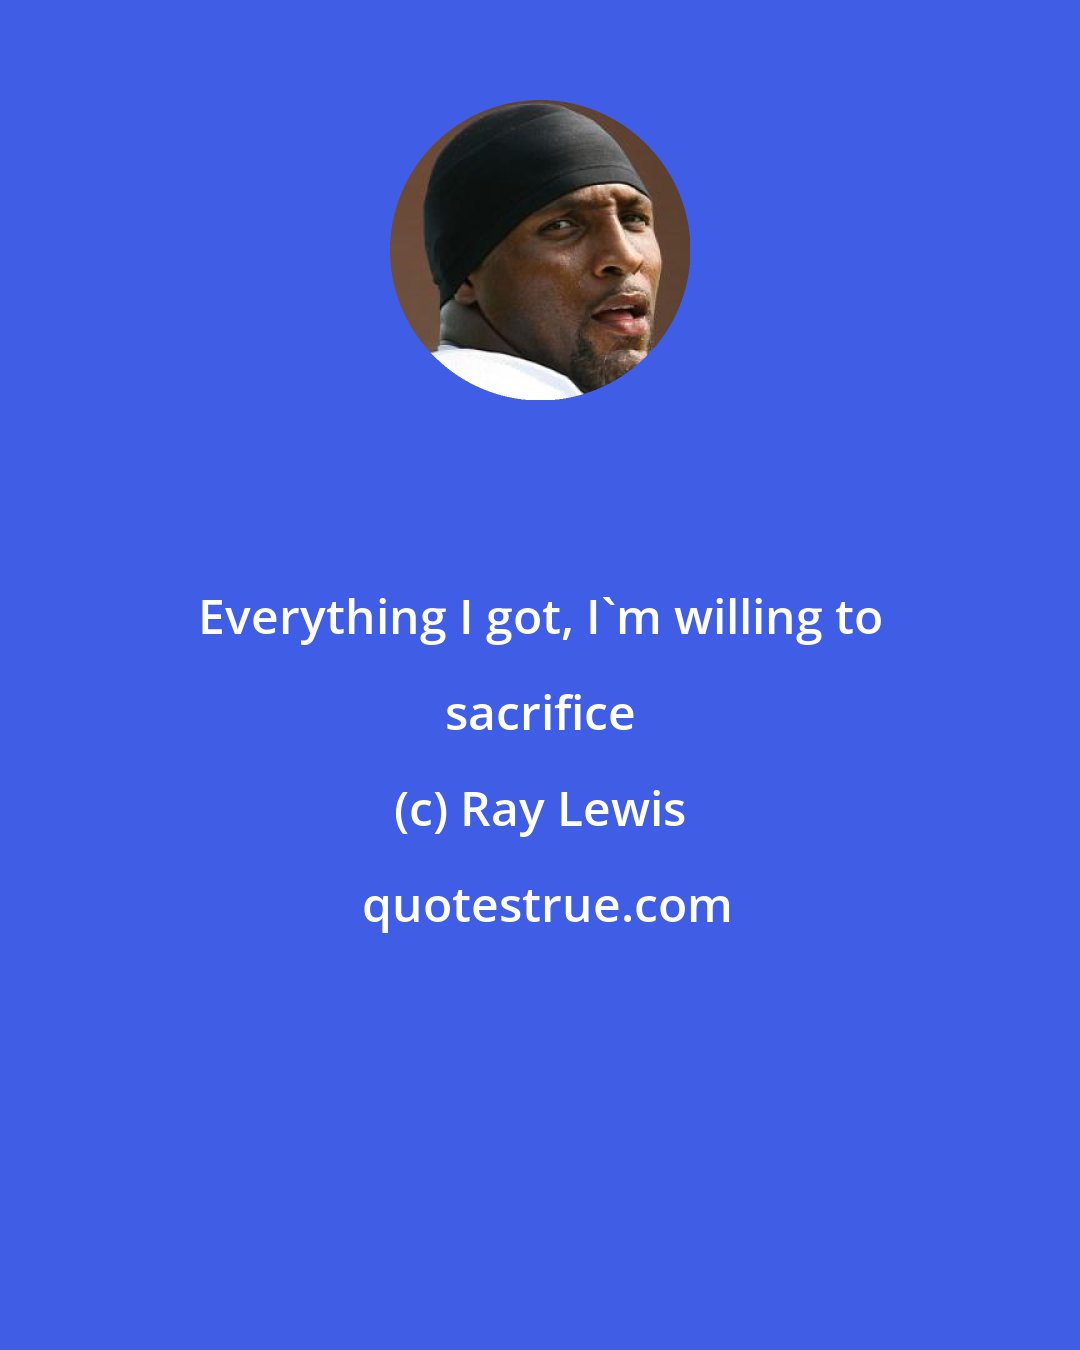 Ray Lewis: Everything I got, I'm willing to sacrifice